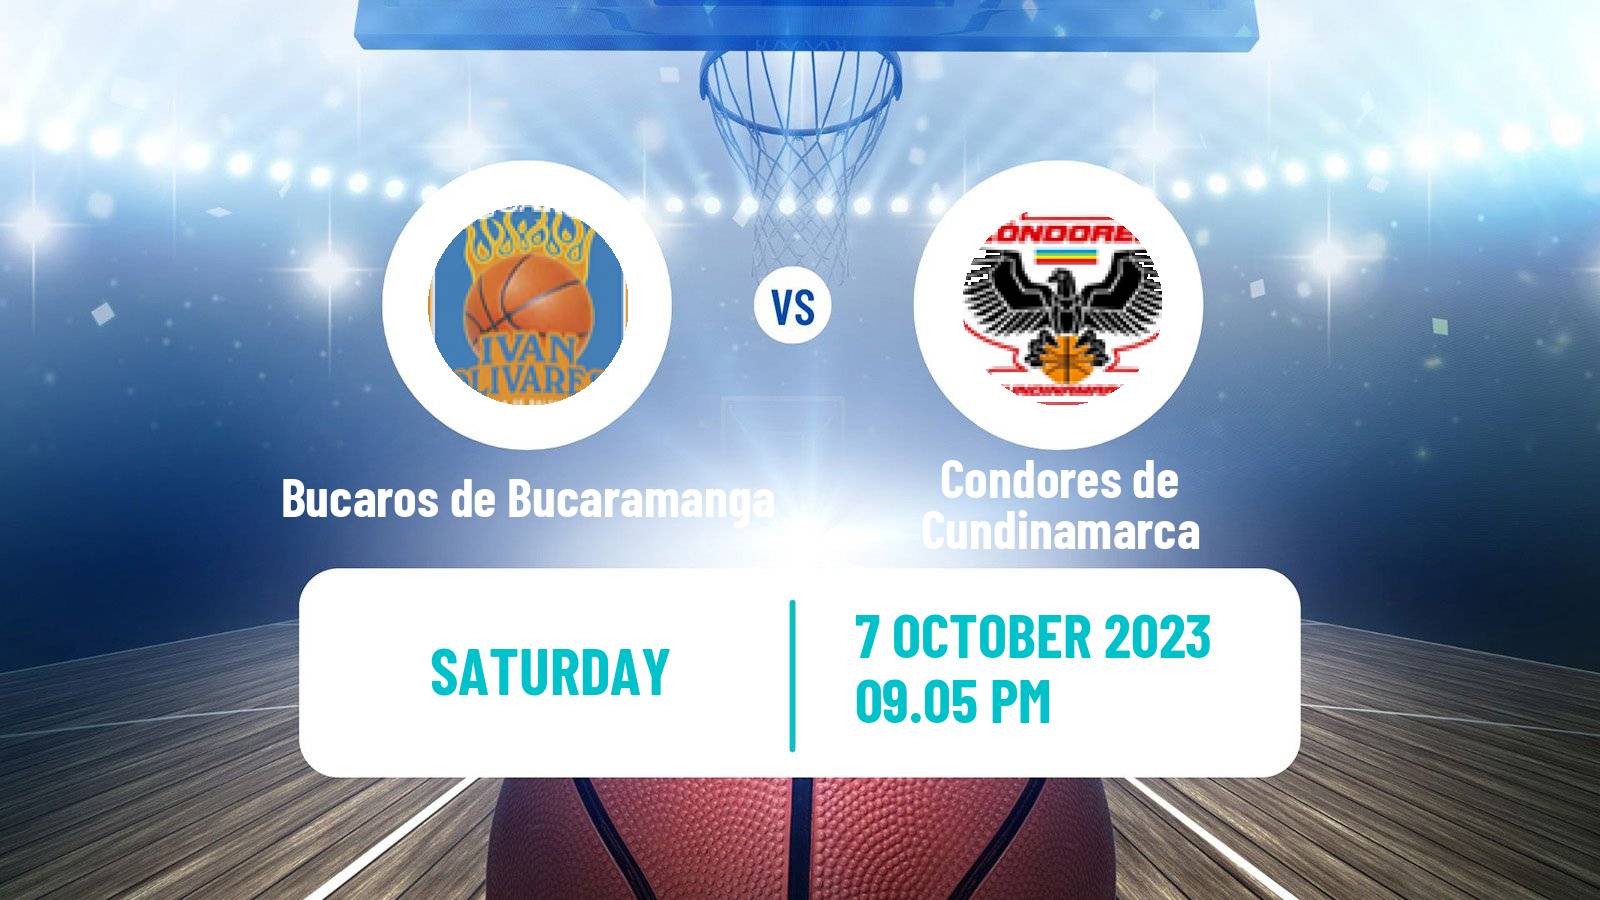 Basketball Colombian LBP Basketball Bucaros de Bucaramanga - Condores de Cundinamarca